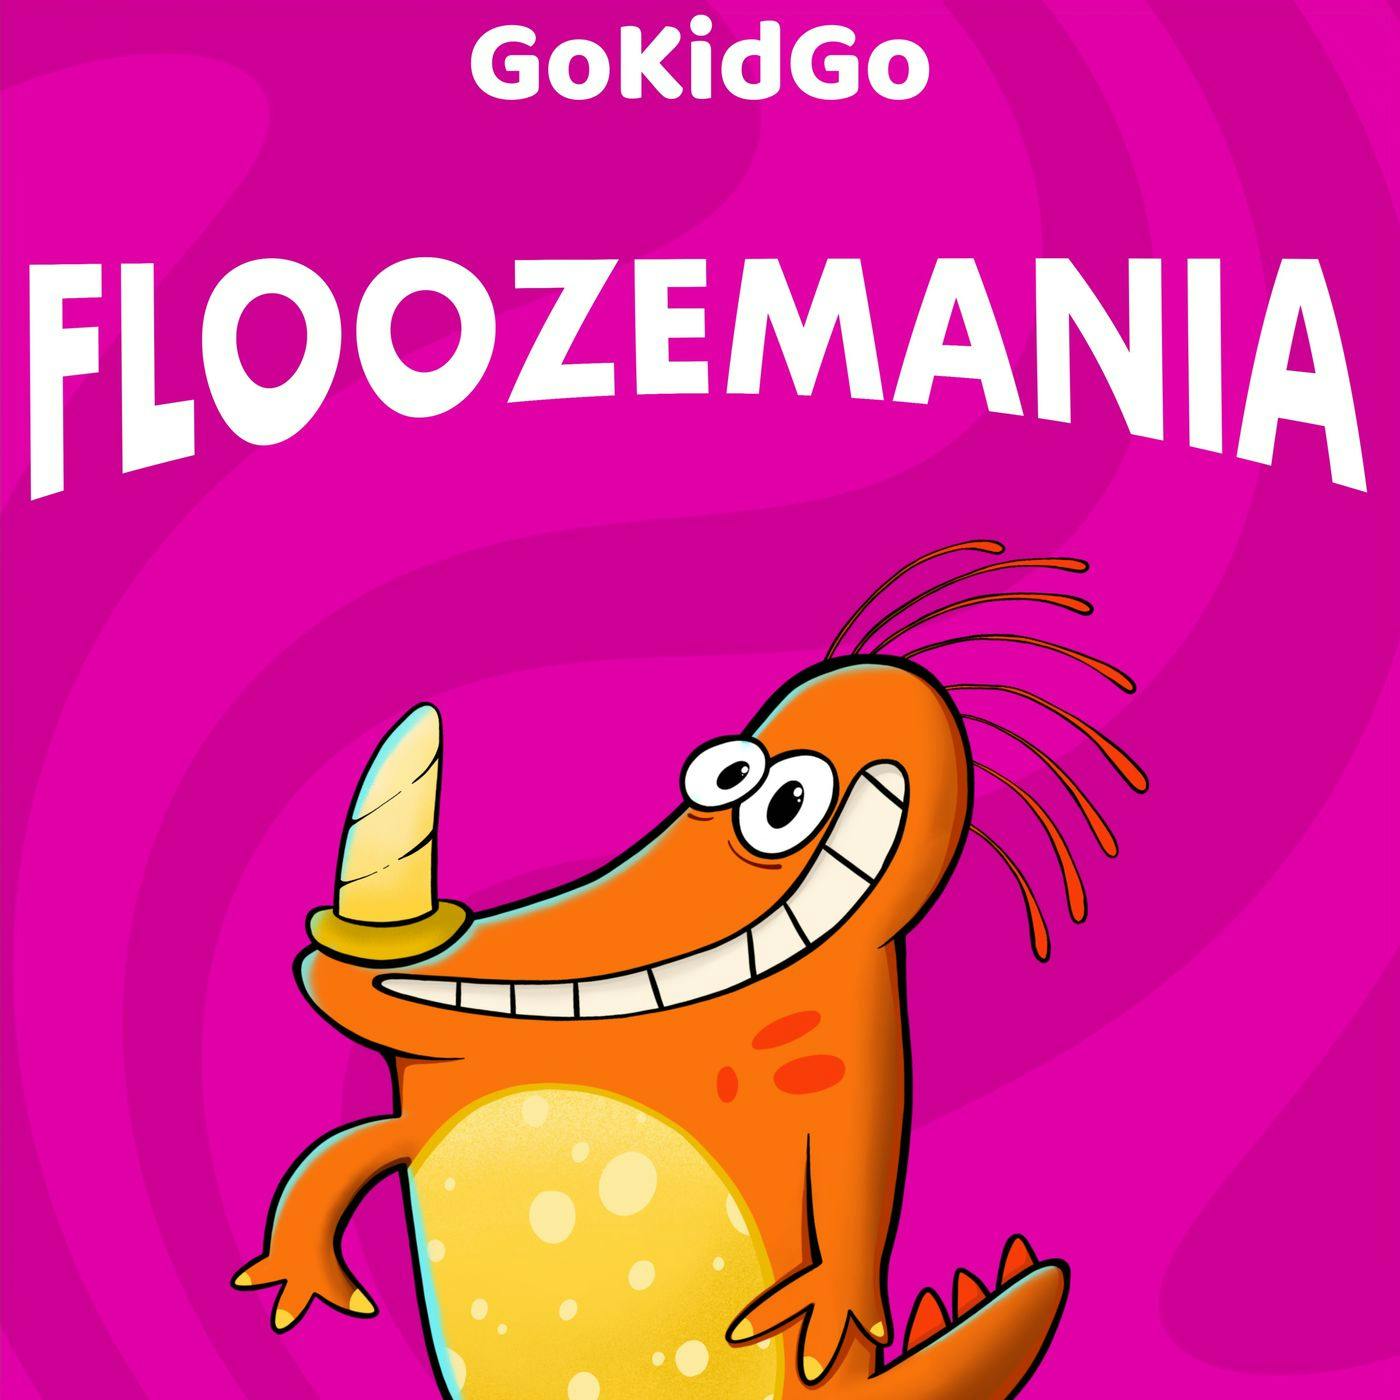 S1E16 - Floozemania: Flooze News